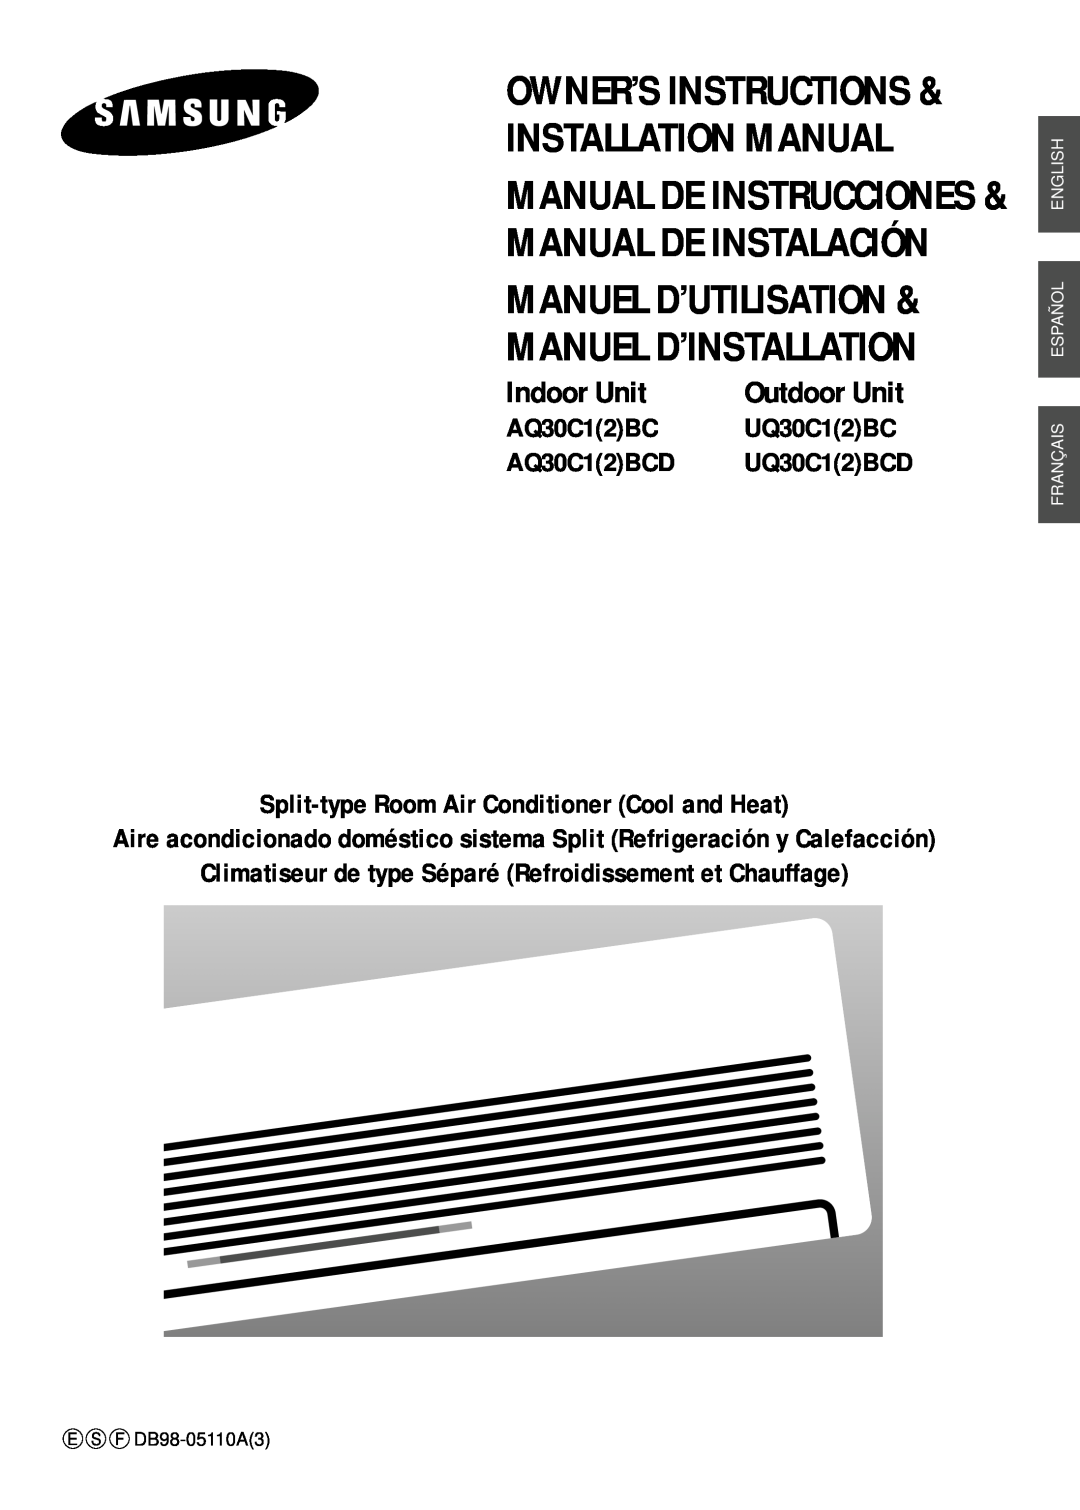 Samsung UQ30C1(2)BC installation manual Installation Manual Manual De Instrucciones, Owner’S Instructions, Indoor Unit 